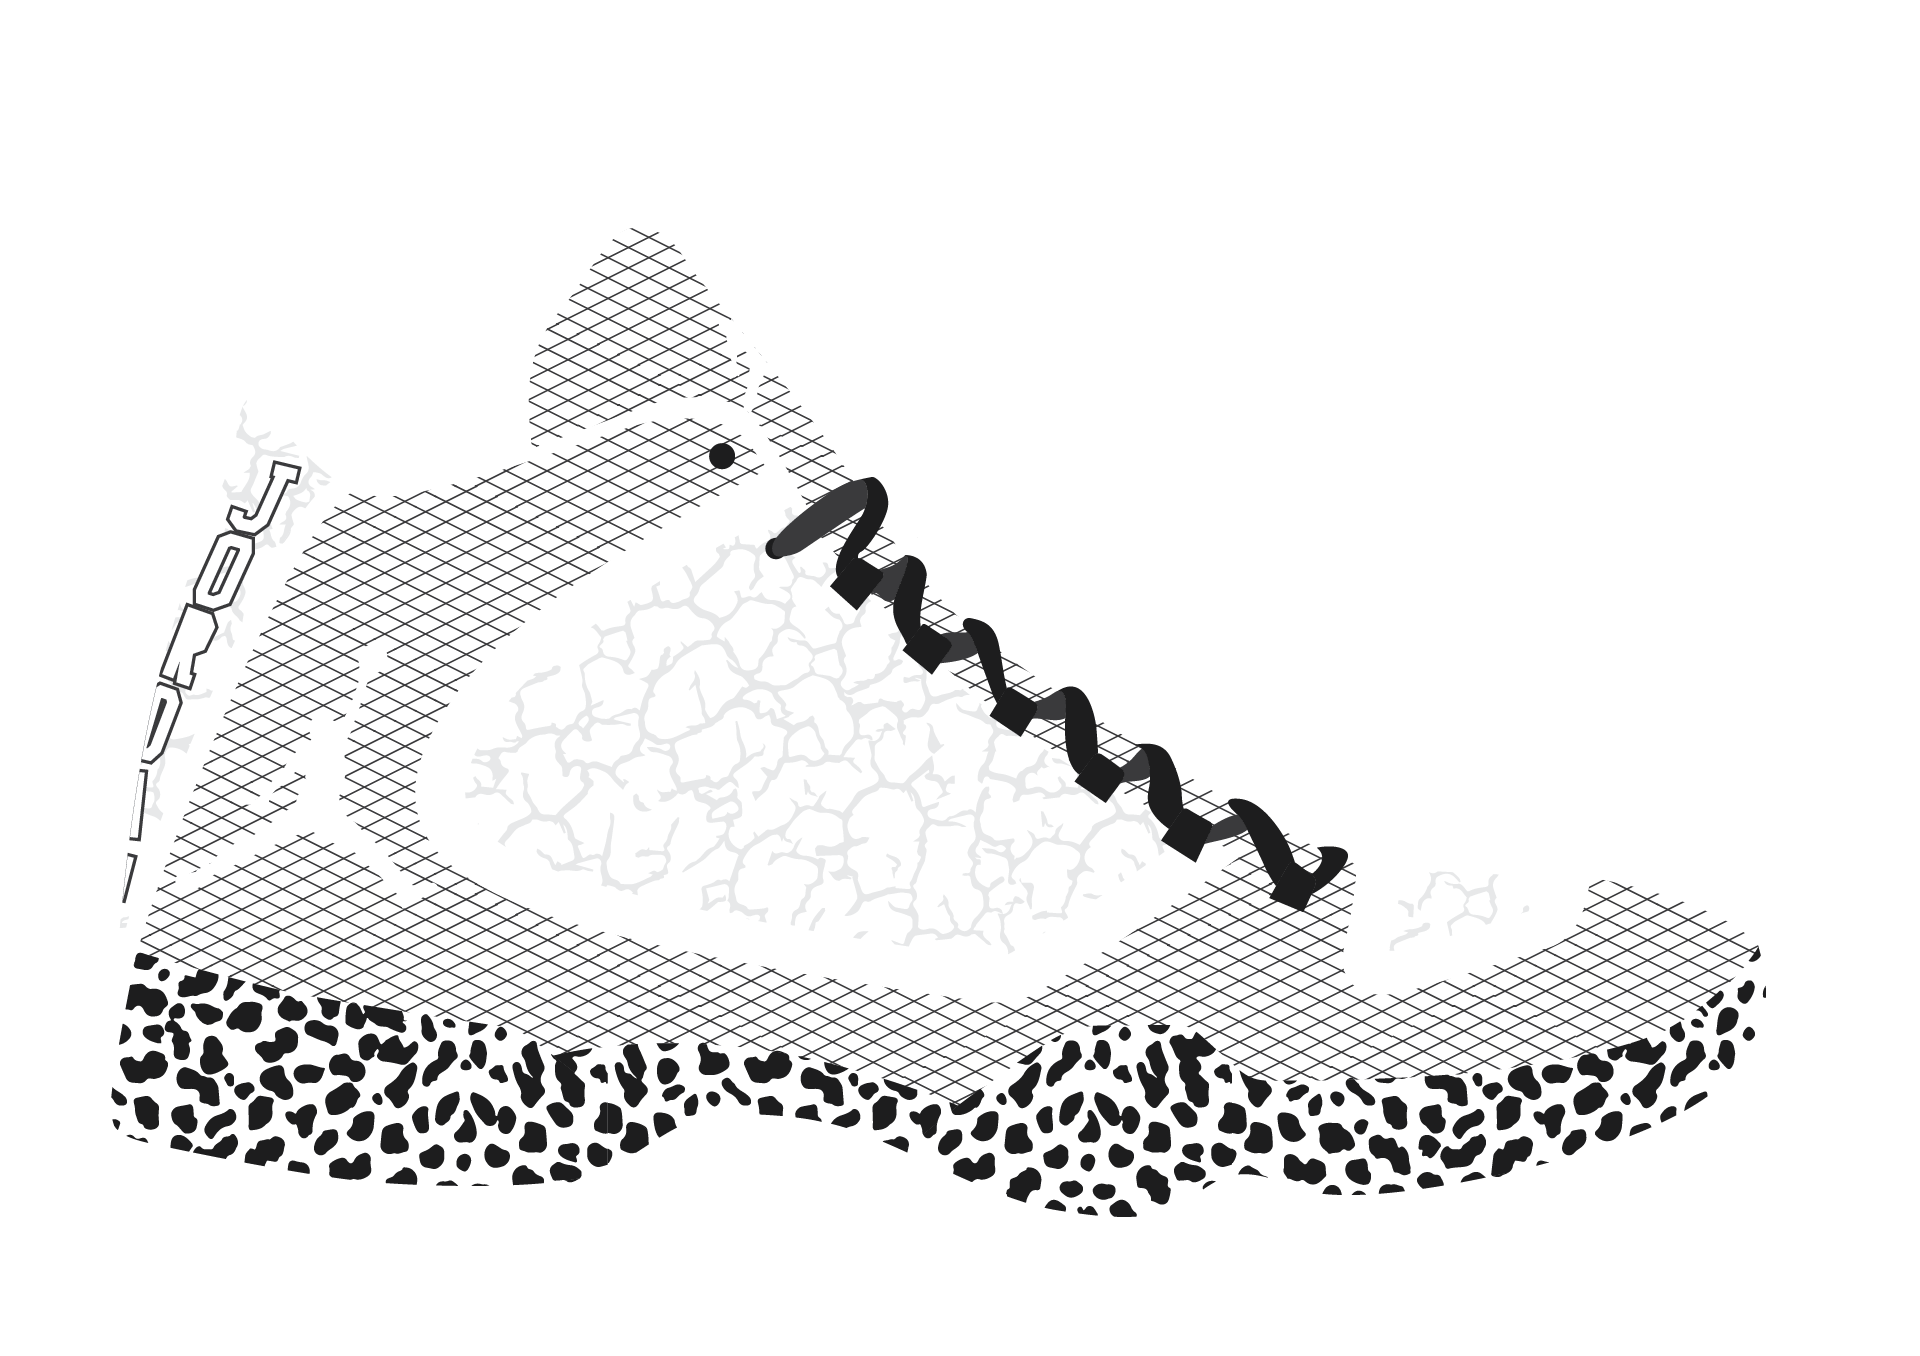 A visual history of every Air Jordan